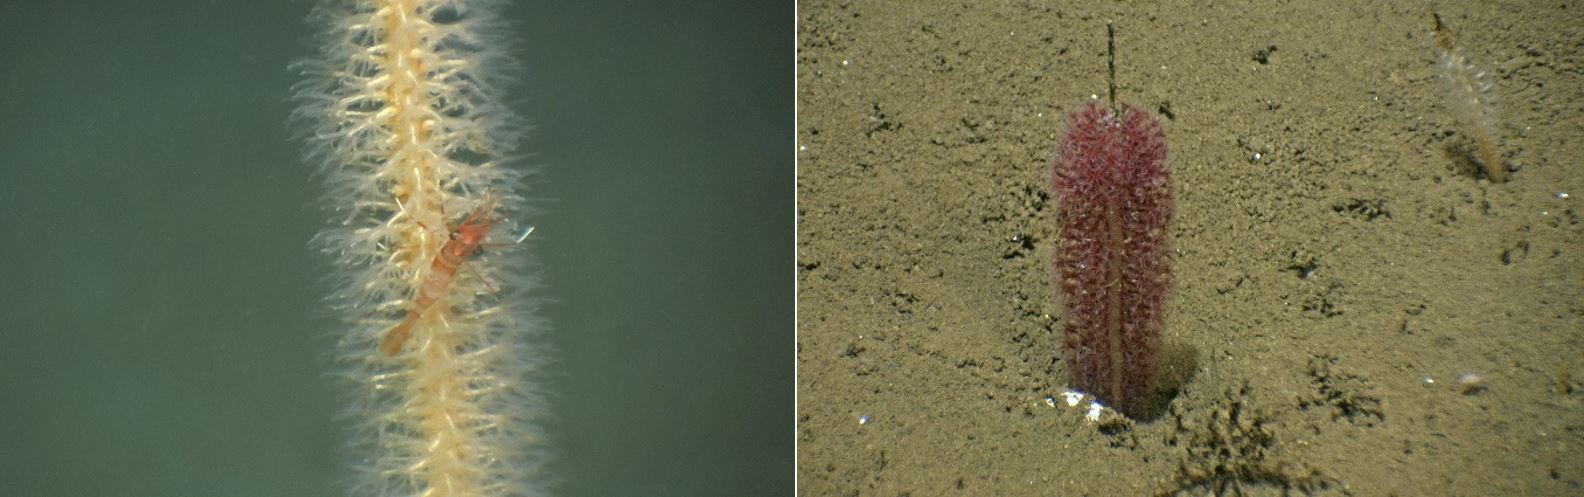 Fra venstre: En stor piperenser som har fanget en kreps, og en liten piperenser på sandbunnen.